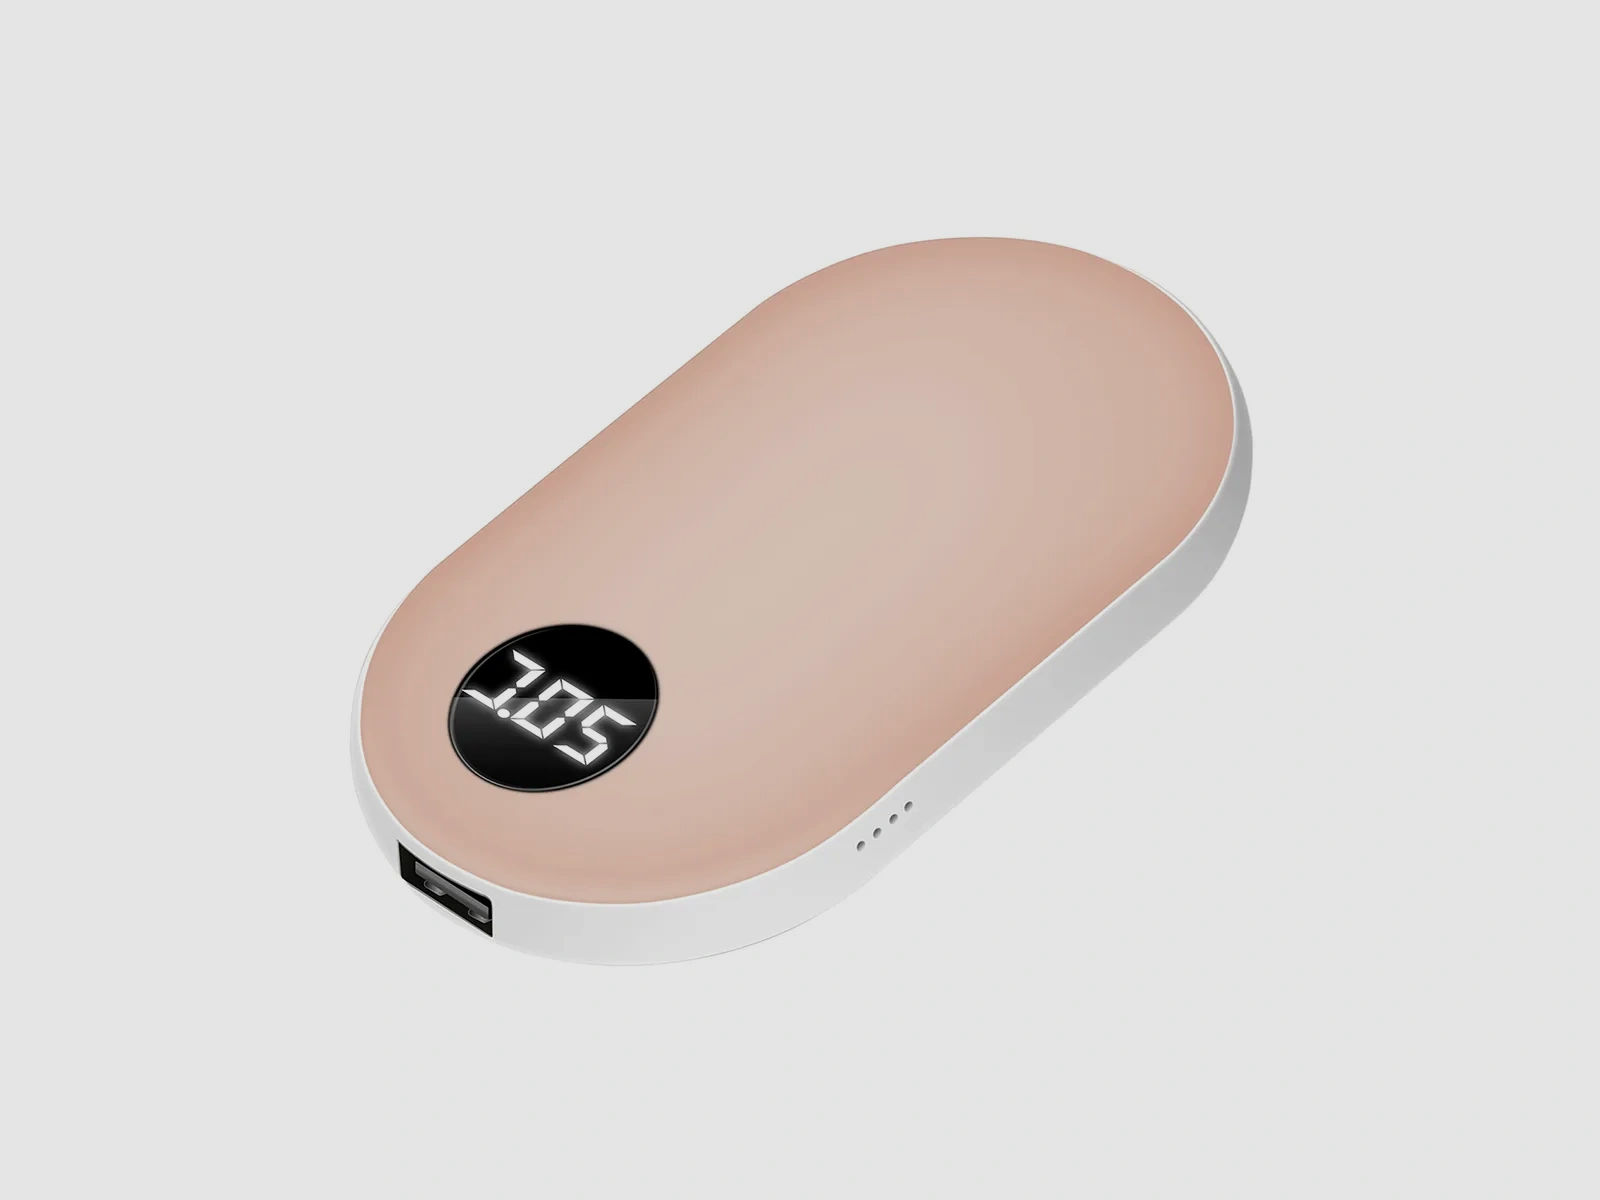 Elektrischer Handwärmer ROSÉ - wiederaufladbar mit USB - 42-52 Grad einstellbar